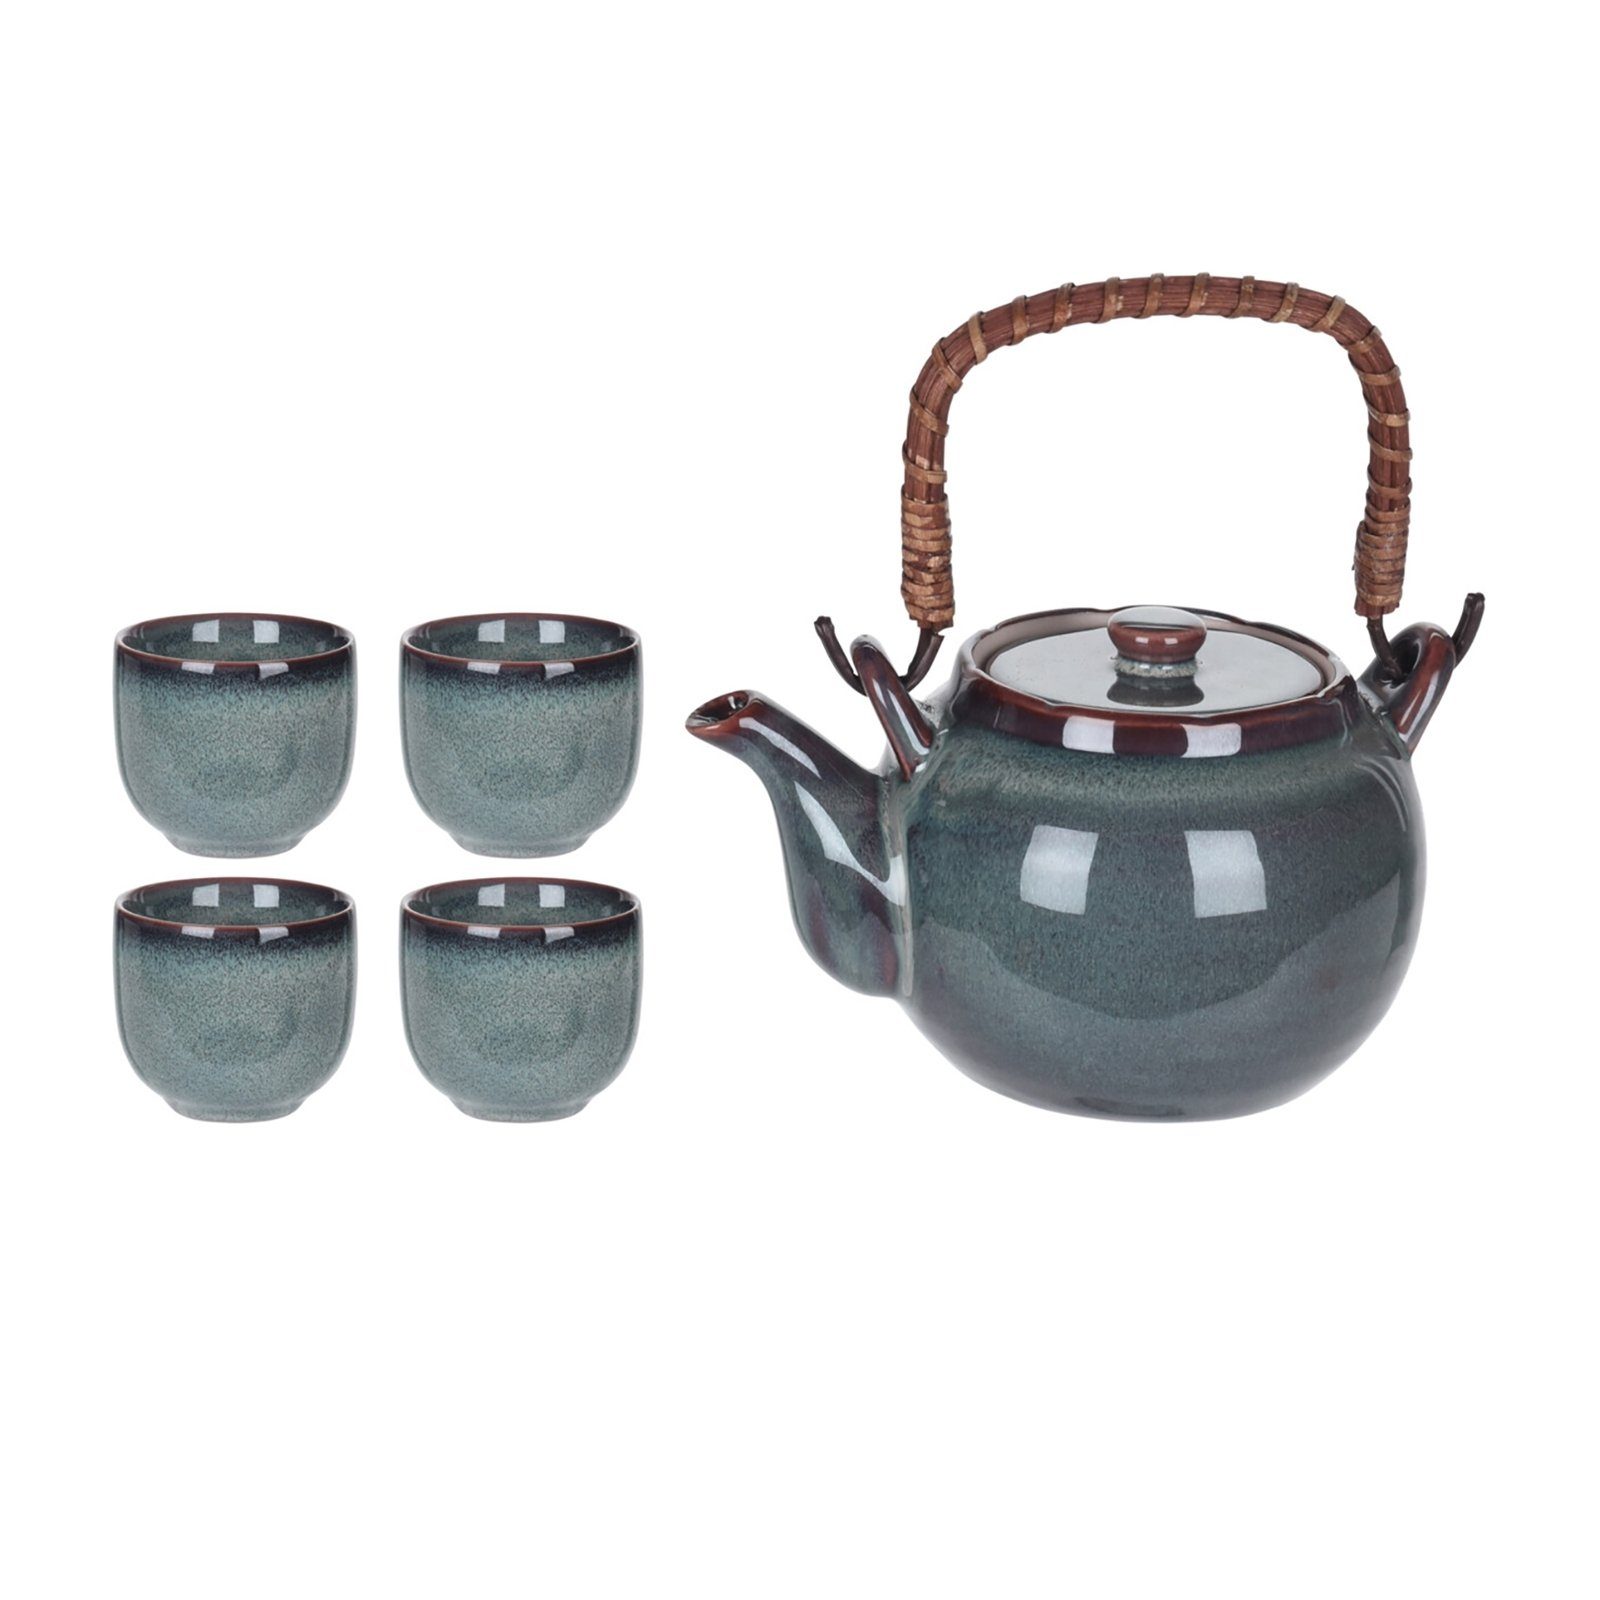 4 mit Teekanne Keramik Teekanne Becher Neuetischkultur